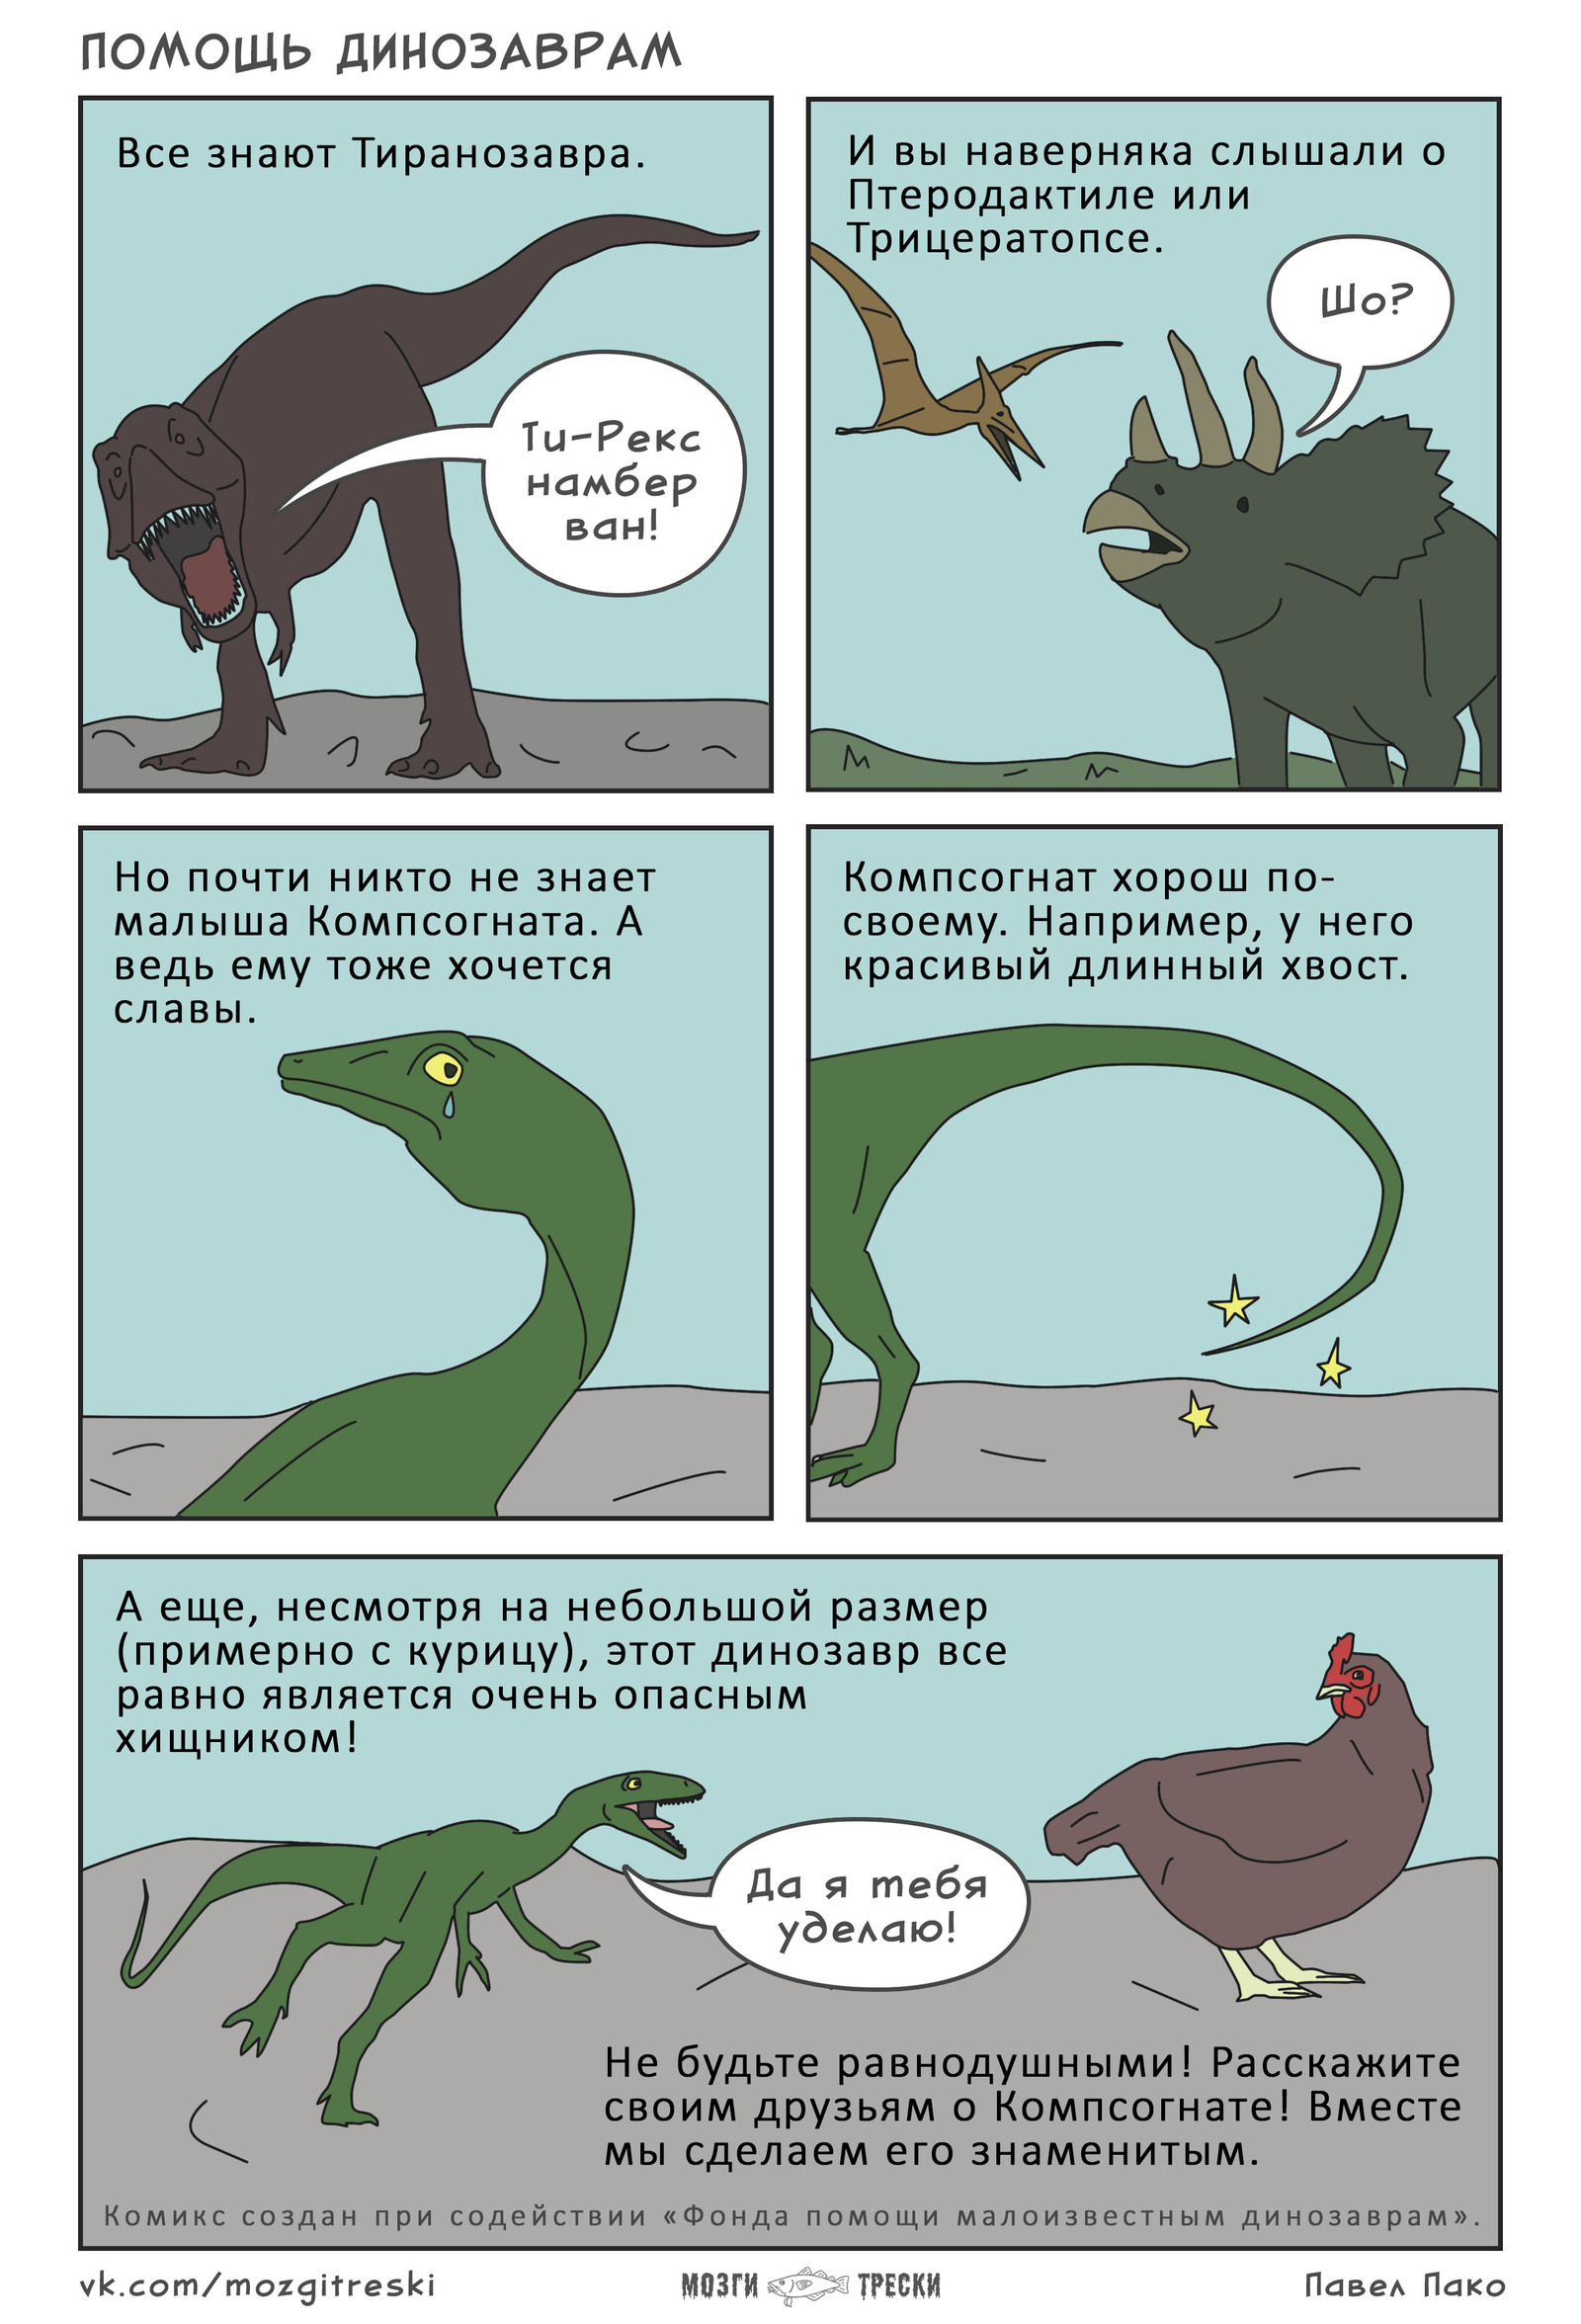 Вопросы динозавра. Шутки про динозавров. Комиксы про динозавров. Комекстпро динозавров. Смешные мемы про динозавров.